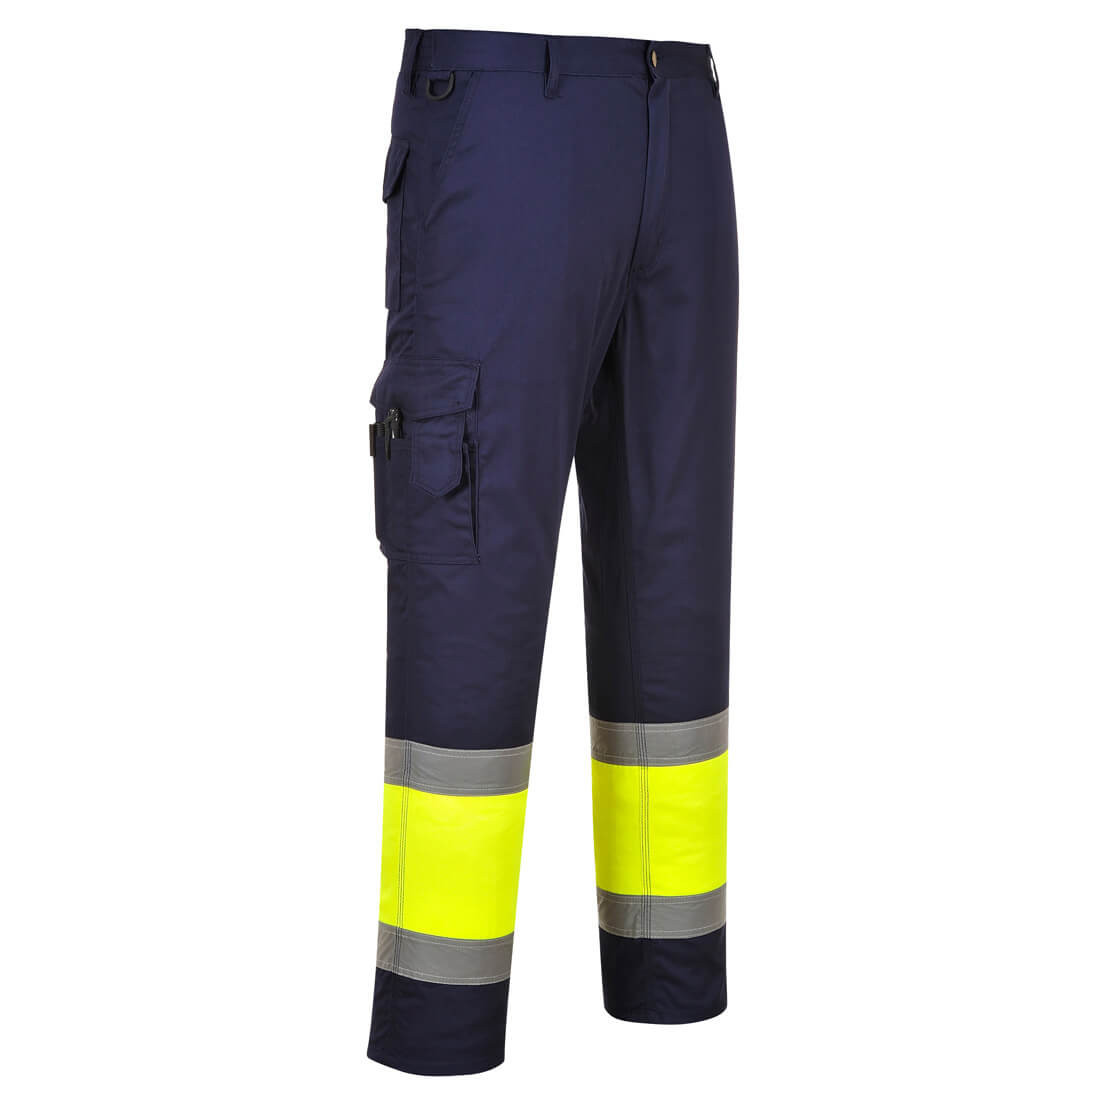 Pantalon HiVis Bicolor Combat - Imbracaminte de protectie